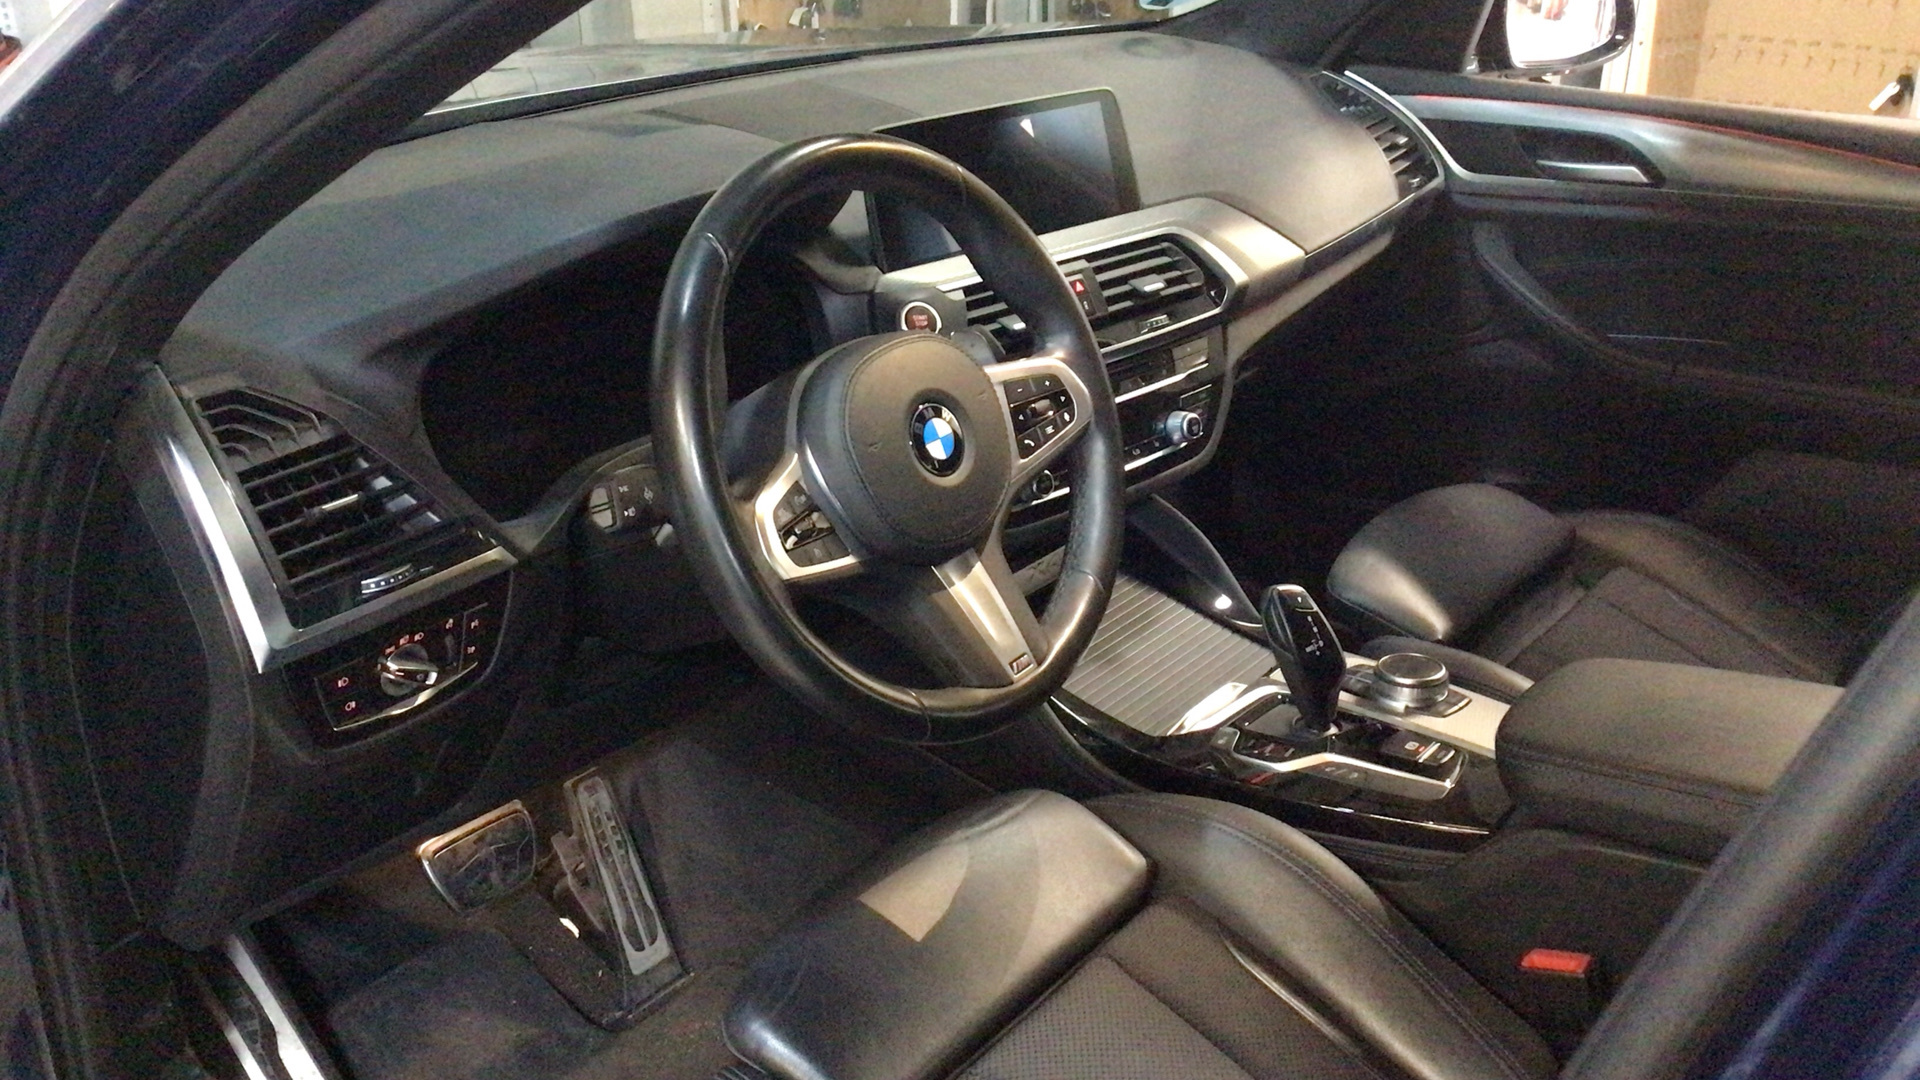 BMW X4 xDrive20d color Azul. Año 2020. 140KW(190CV). Diésel. En concesionario BYmyCAR Madrid - Alcalá de Madrid